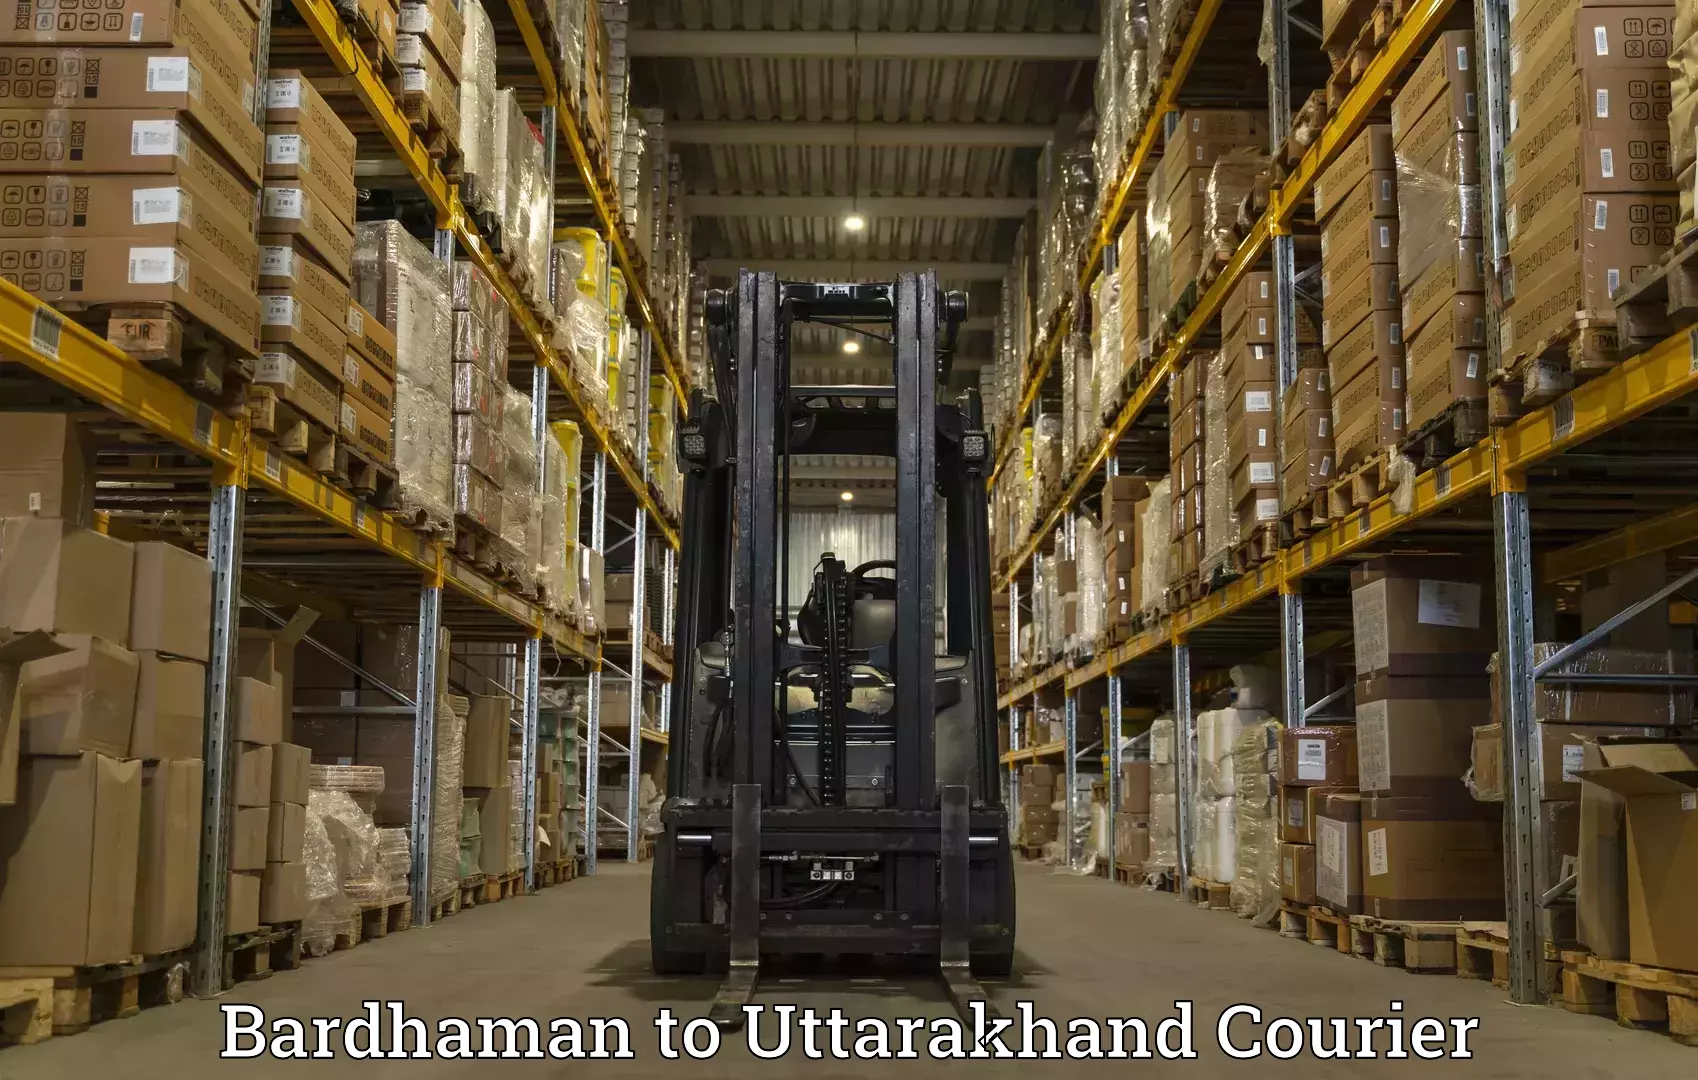 Global logistics network Bardhaman to Kotdwara